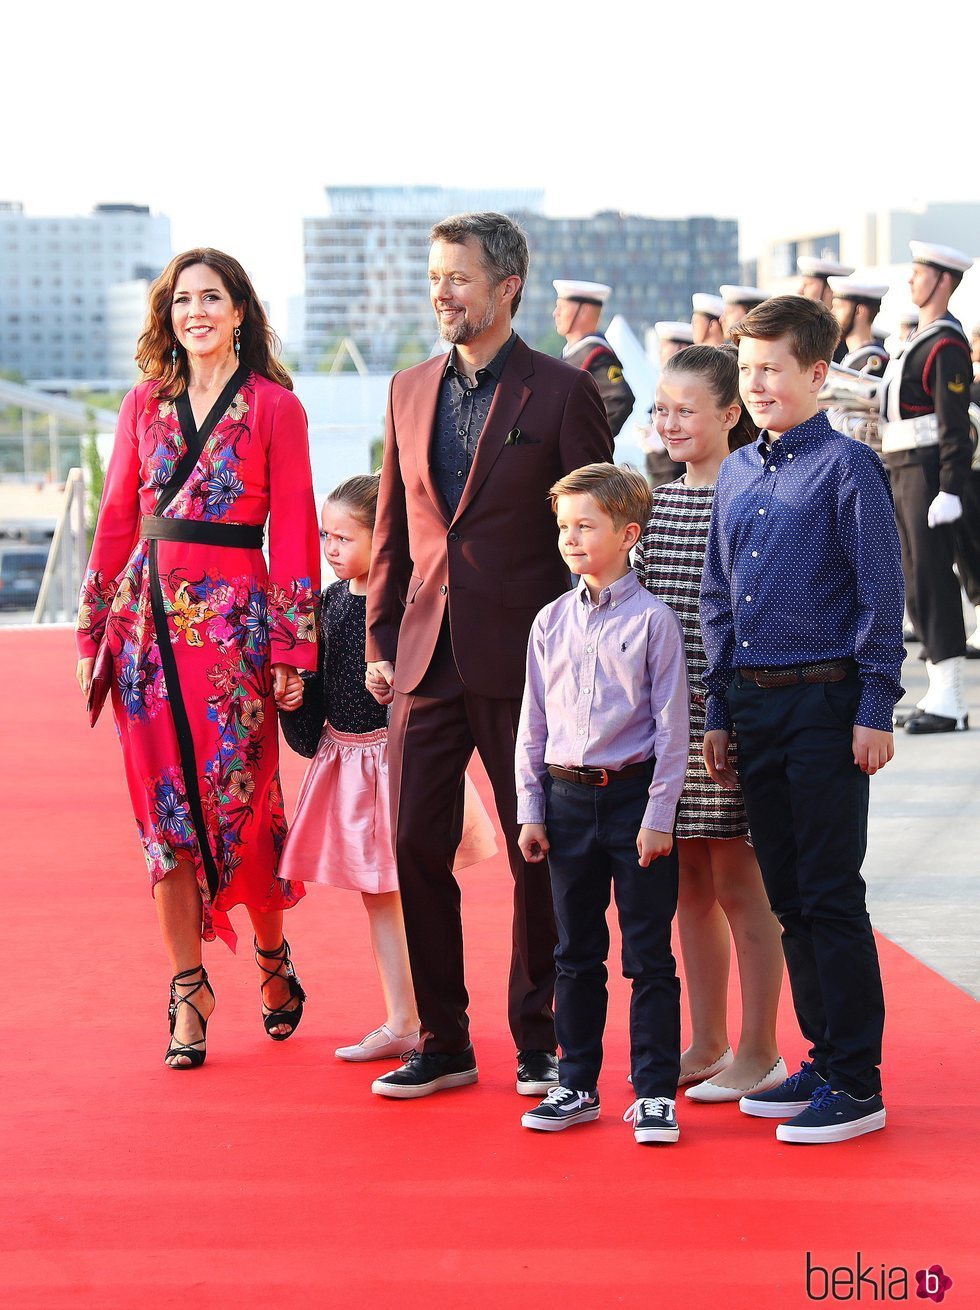 Federico y Mary de Dinamarca con sus hijos en el concierto por el 50 cumpleaños de Federico de Dinamarca